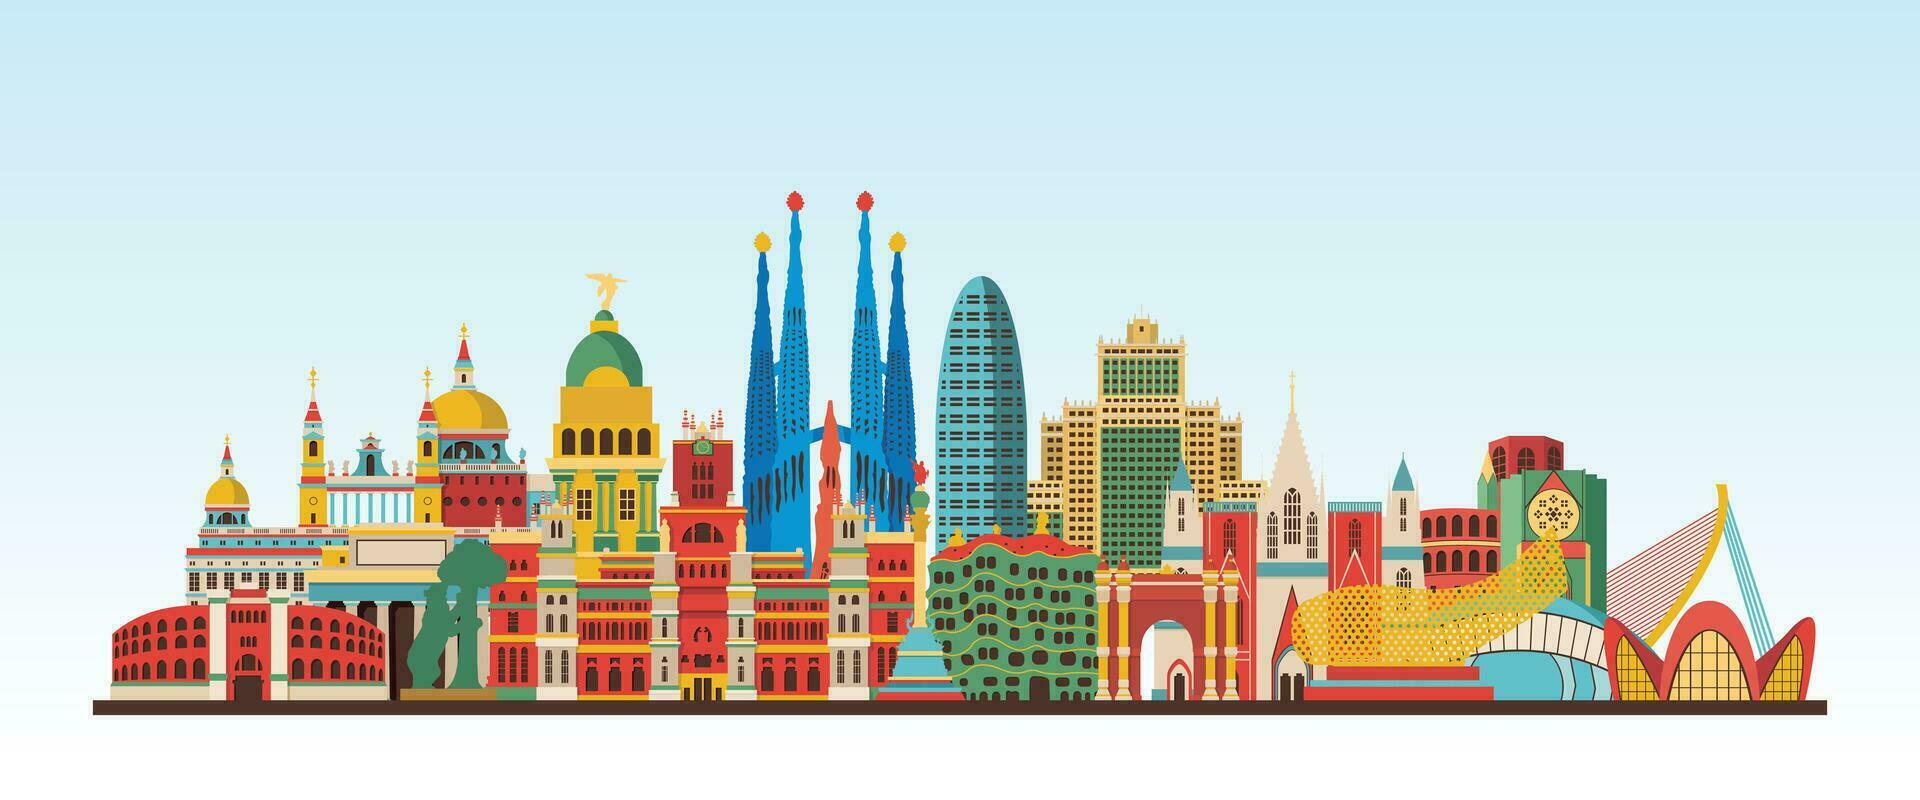 España ciudad detallado horizonte y punto de referencia, Europa famoso viaje sitio vistoso edificio y Monumento digital vector ilustraciones